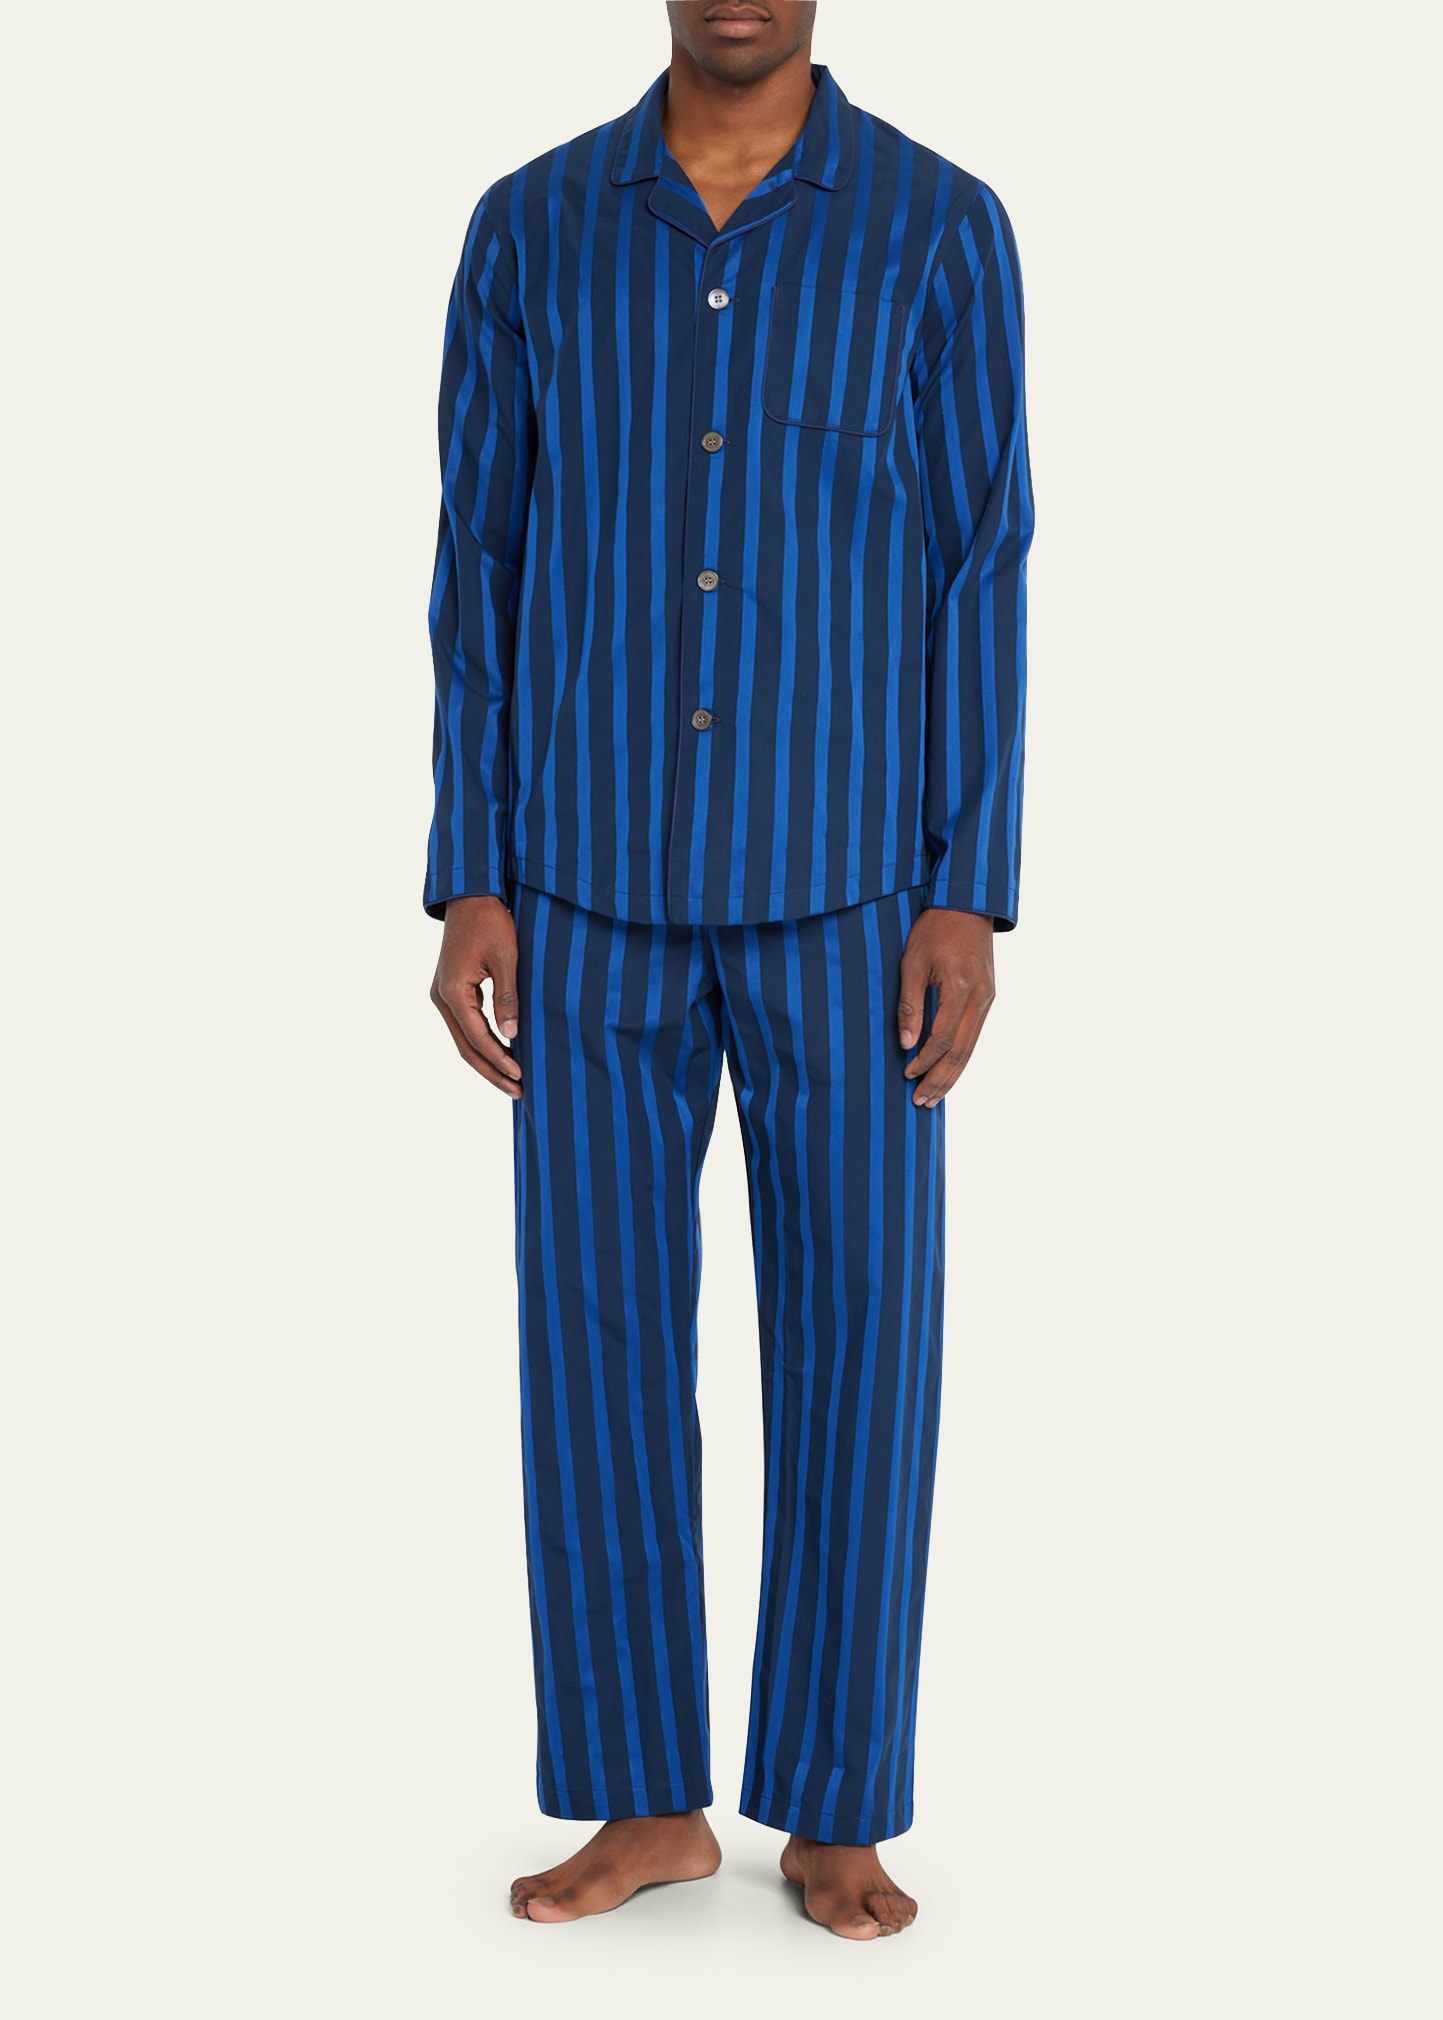 Derek Rose Men's Modern Fit Stripe Pajama Set In Navy